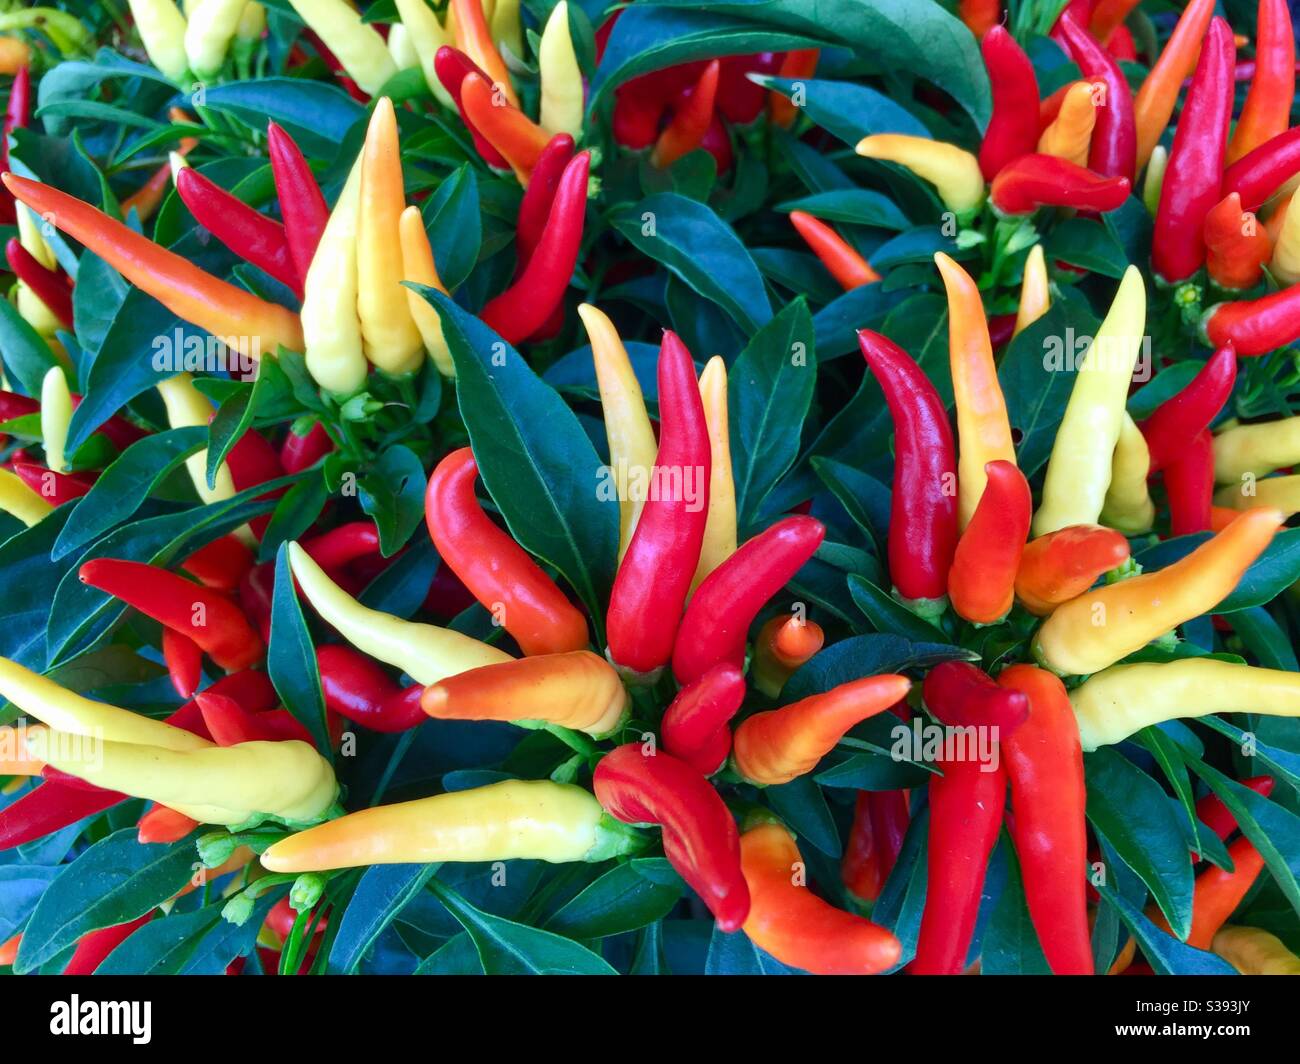 Farbenfrohe Chilli-Paprika (Capsicum annuum) in ihrer lebendigen Schönheit. Stockfoto